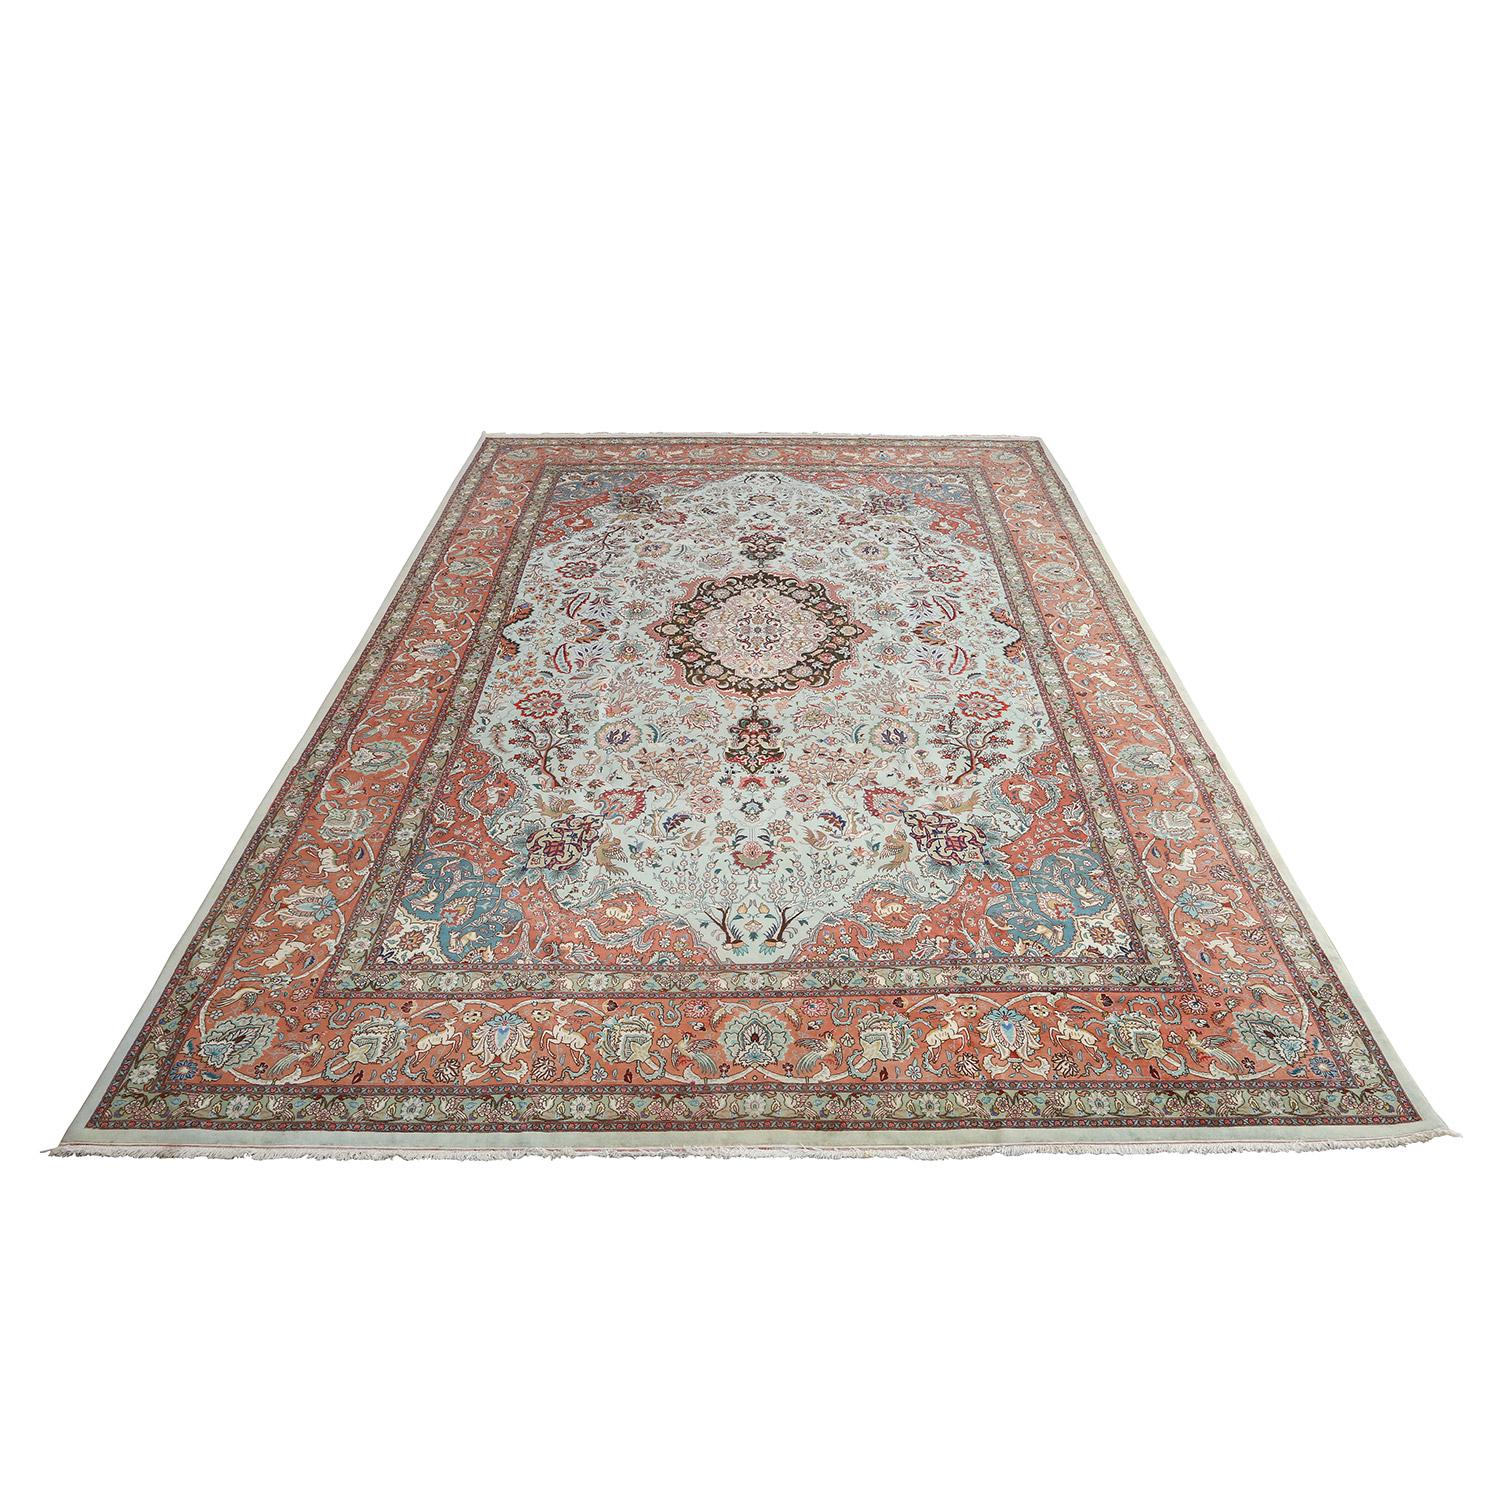 Ce tapis Tabriz vintage est orné d'un médaillon central enchanteur, véritable chef-d'œuvre du tissage persan. D'une taille impressionnante de 16 pieds par 11 pieds et 10 pouces, il attire l'attention et définit l'espace qu'il habite.

Le médaillon